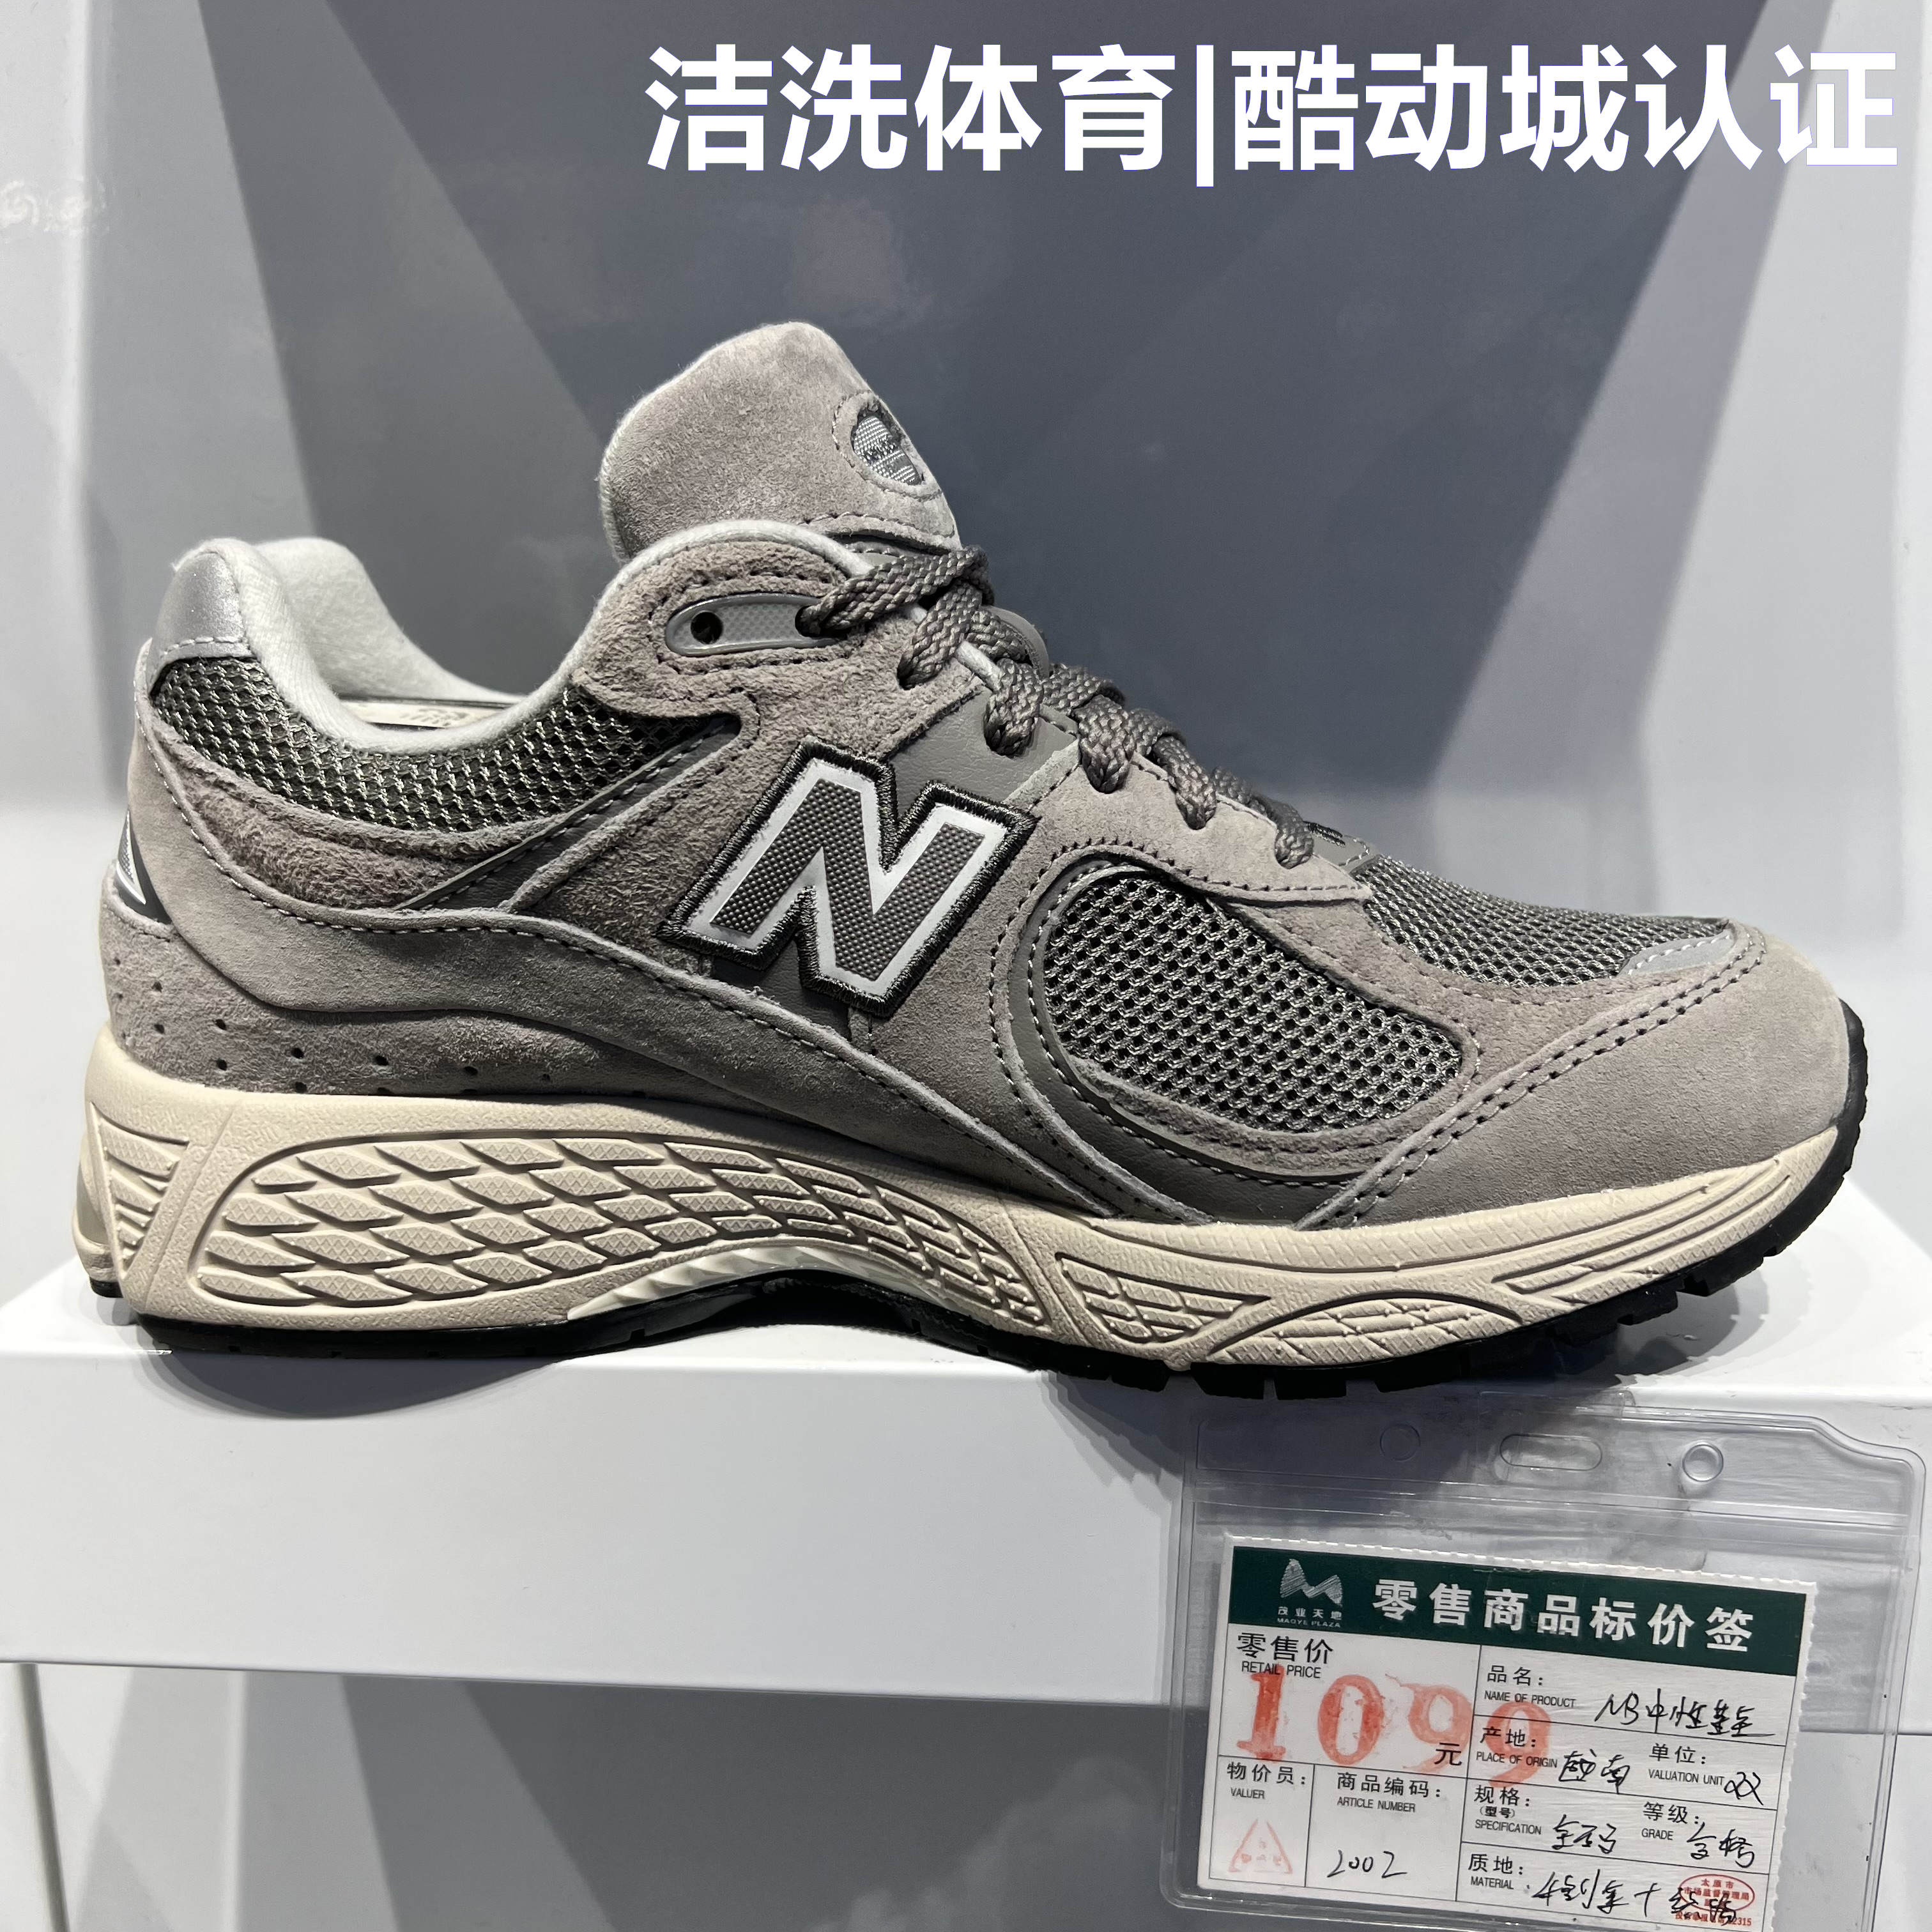 NEW BALANCE/NB男鞋休闲复古时尚老爹跑步鞋运动鞋ML2002RA/RC